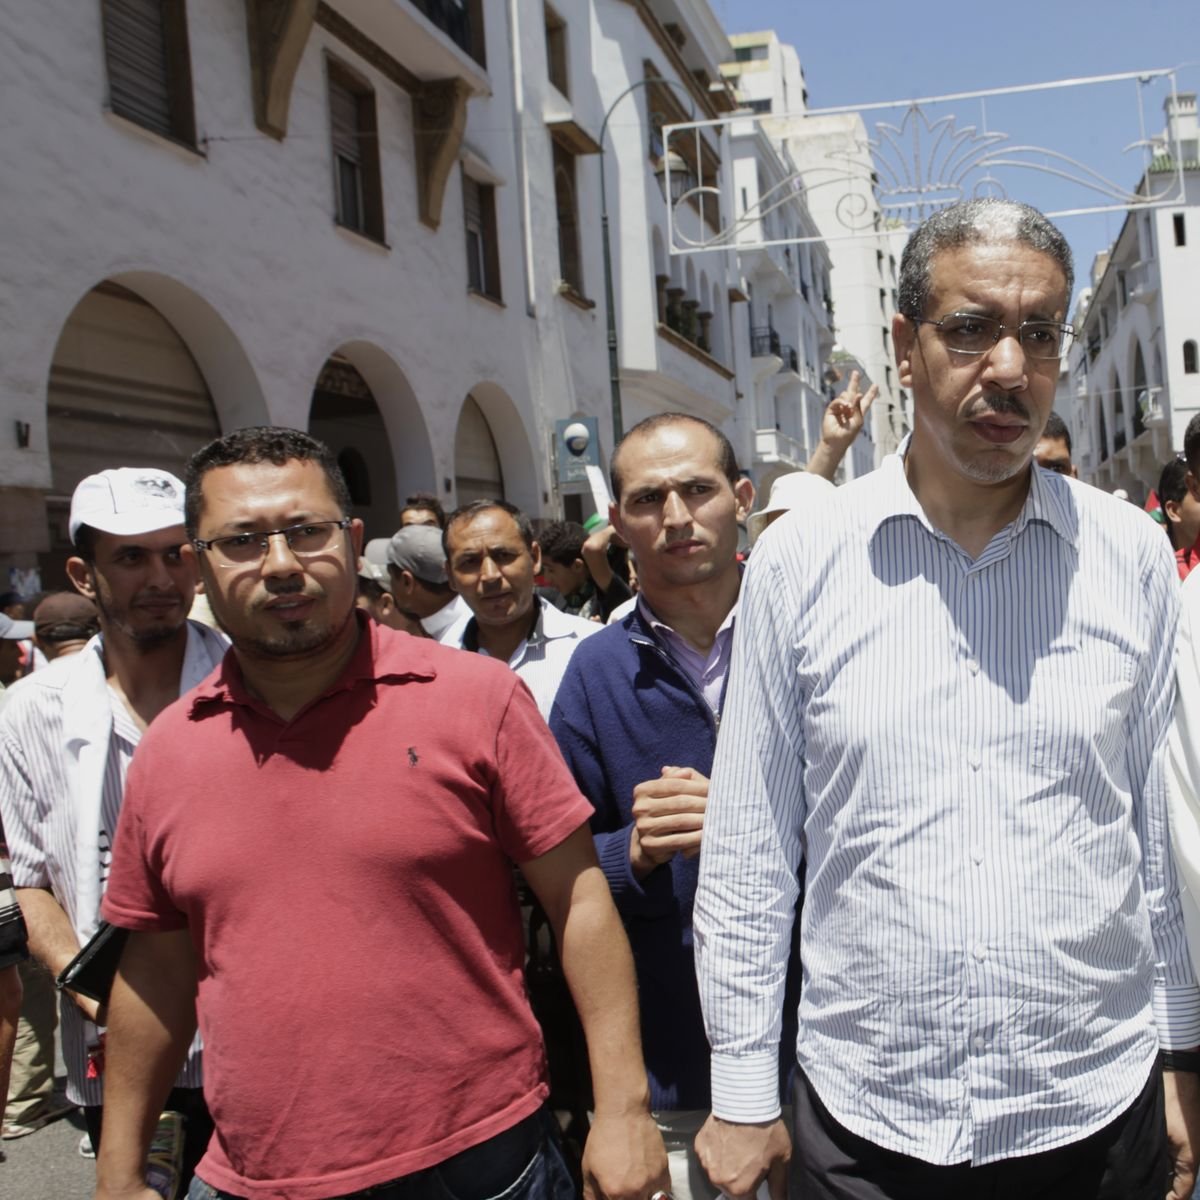 Aziz Rabbah, ministre de l'Equipement, est parmi les leaders PJDistes ayant participé à cette marche.
